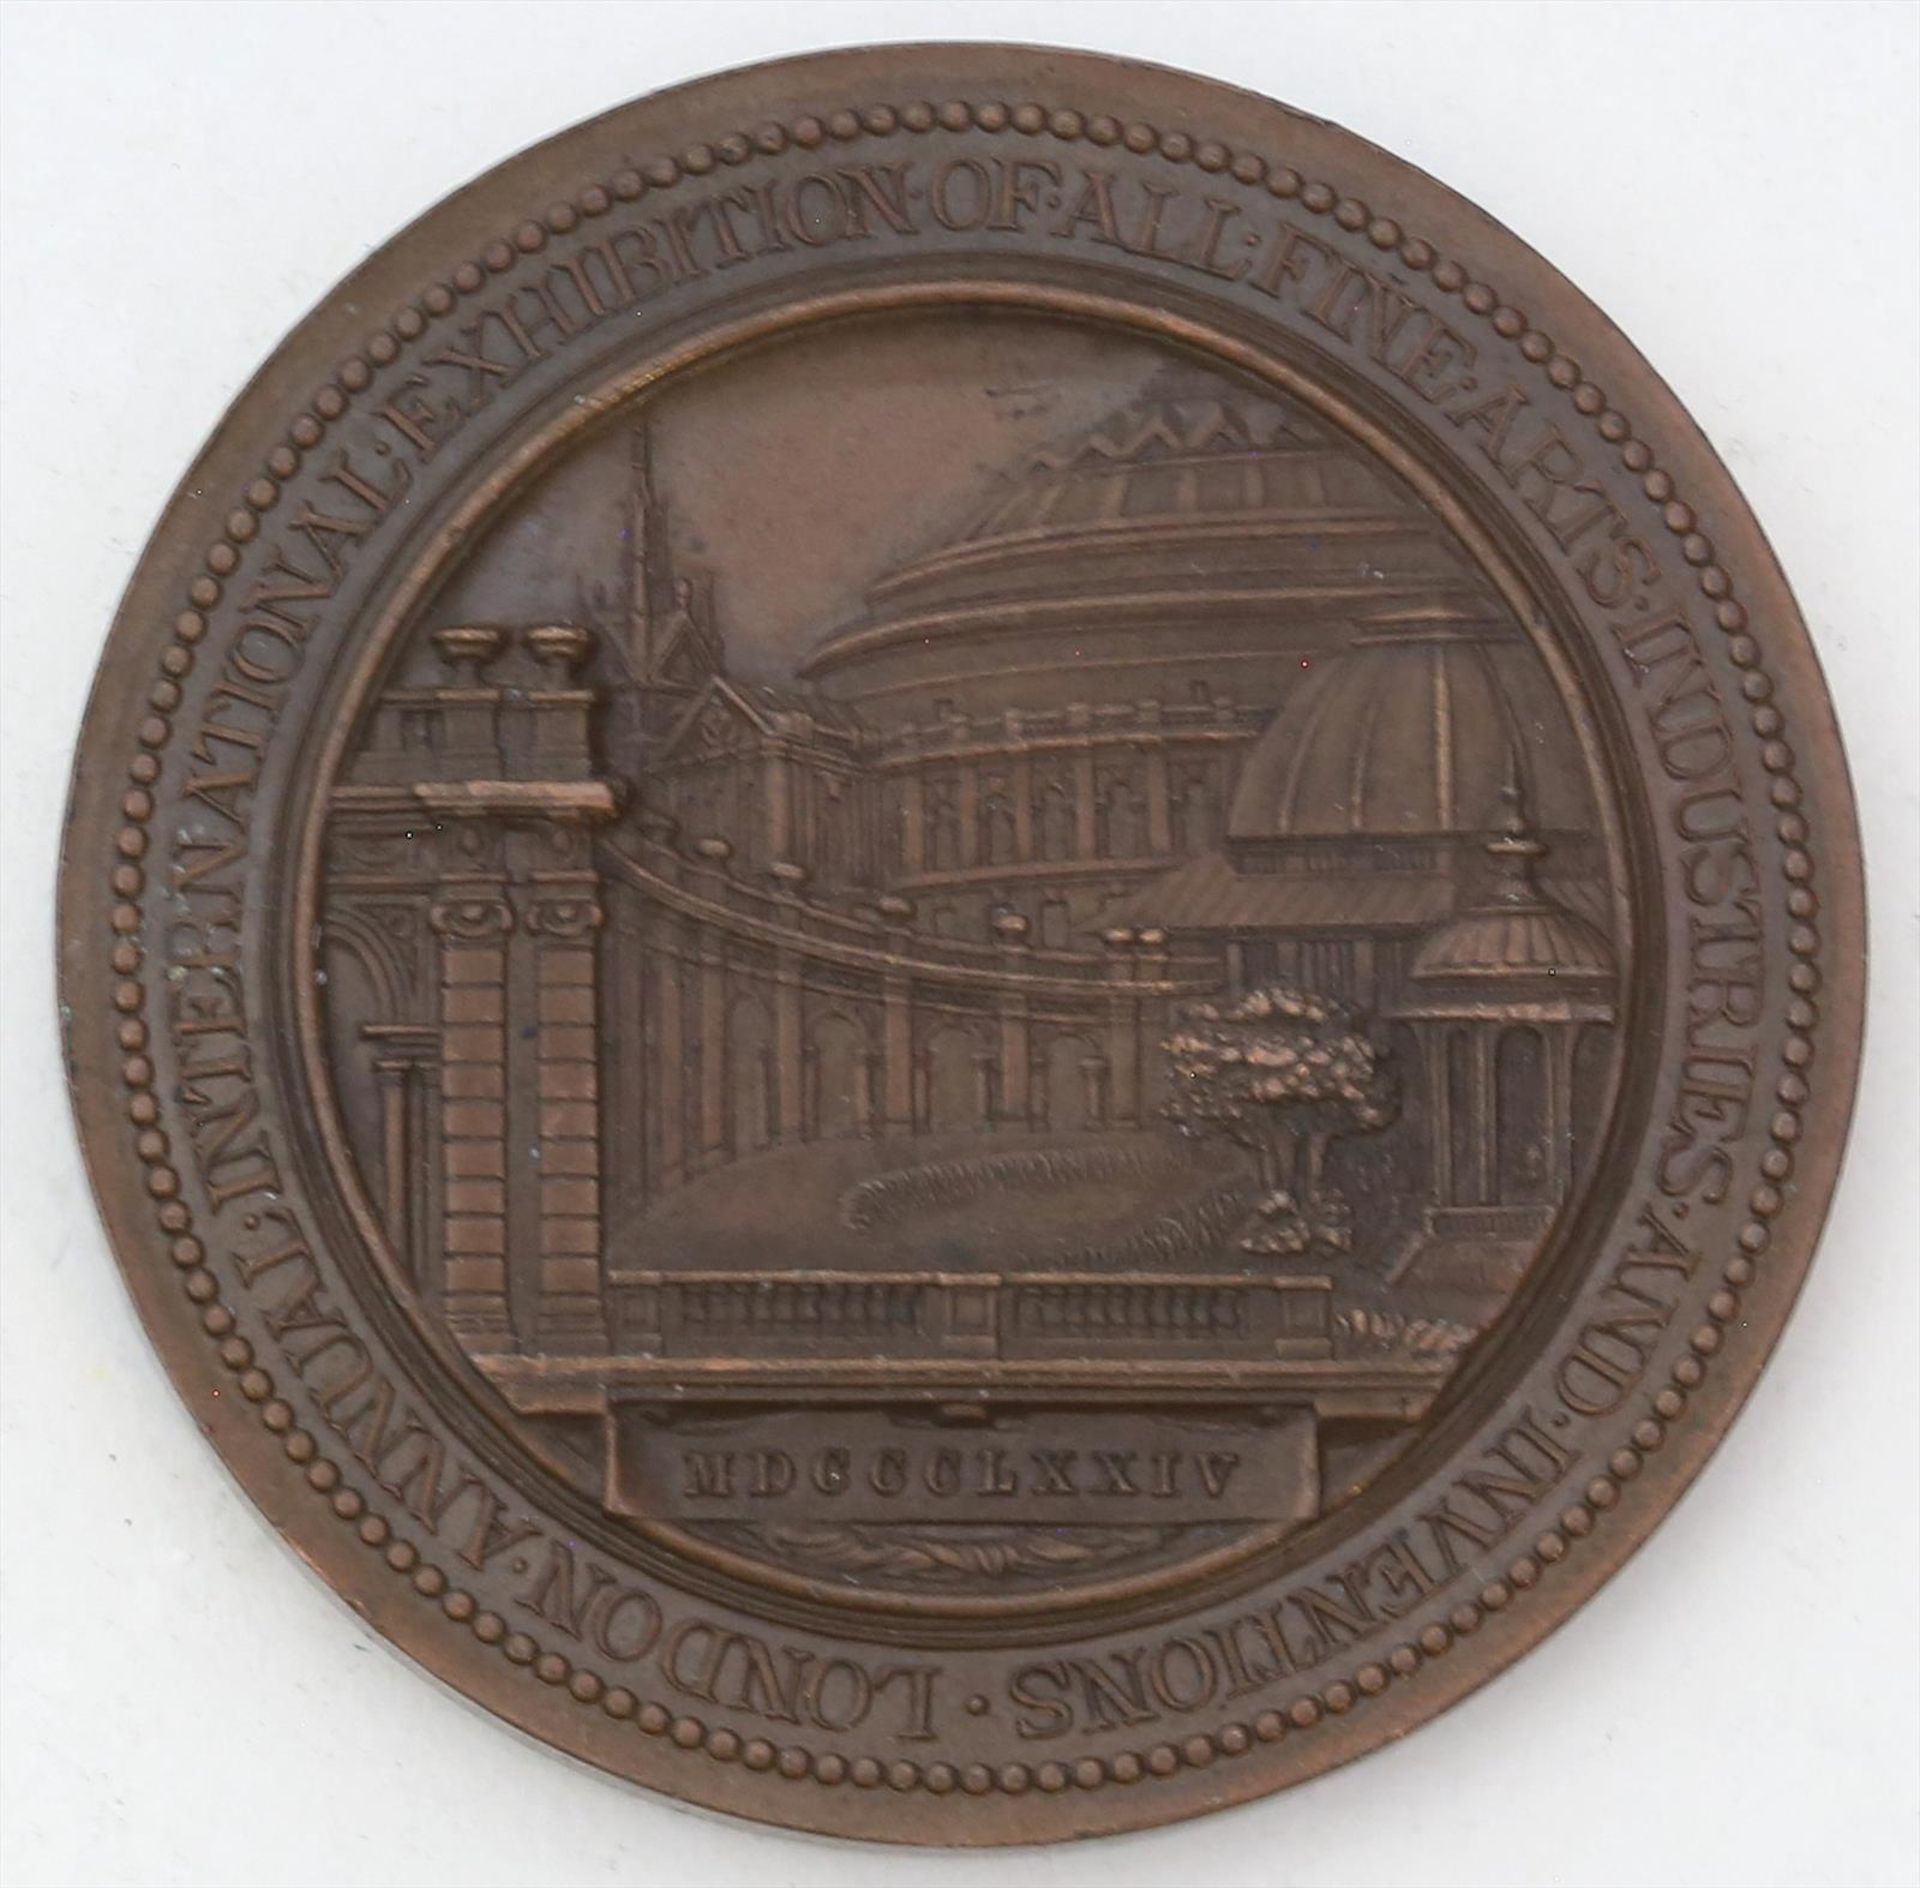 Medaille von 1874 "Weltausstellung London".D. 51 mm.